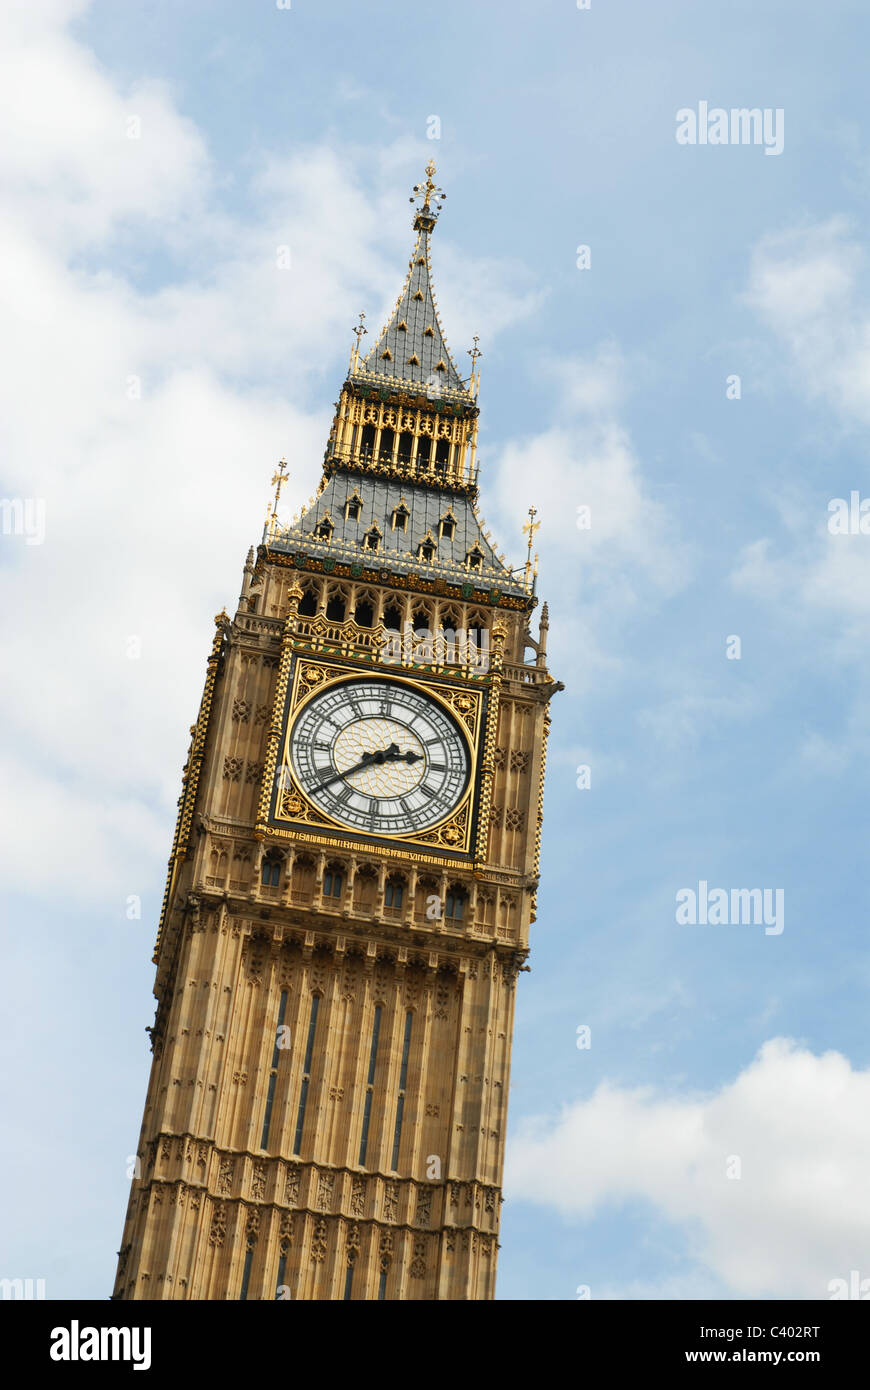 Dies ist ein Bild der Uhr von Big Ben in den Houses of Parliament, UK Stockfoto